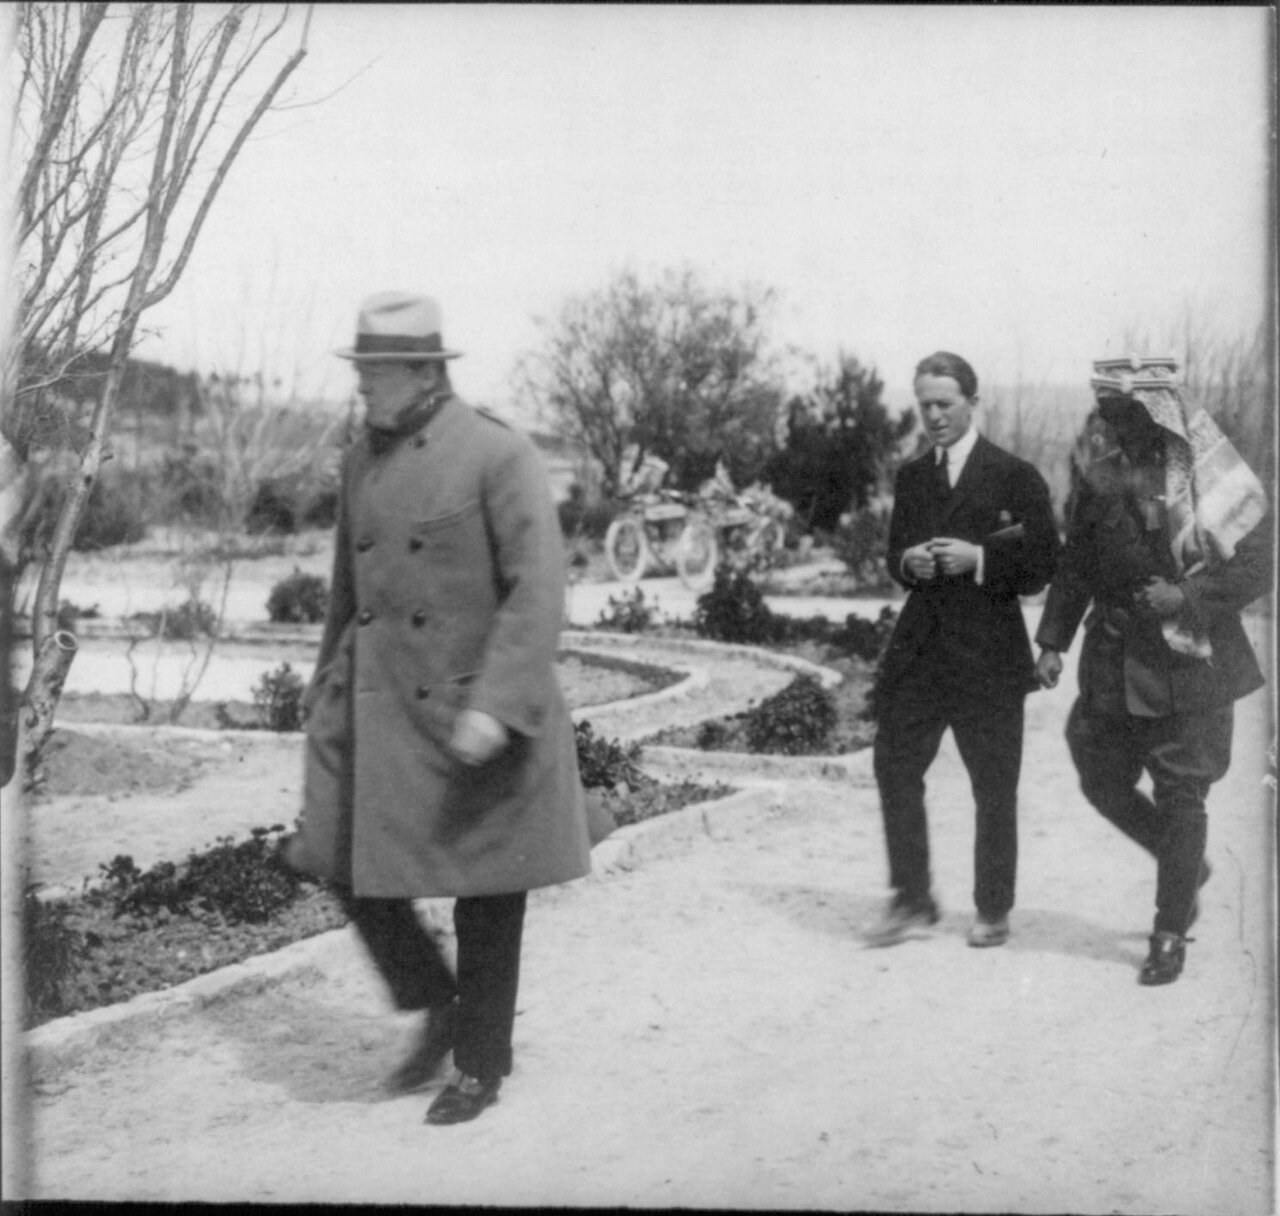 1921. Уинстон Черчилль, Томас Лоуренc и эмир Абдулла прогуливаются в саду дома Правительства во время секретной конференции в Иерусалиме